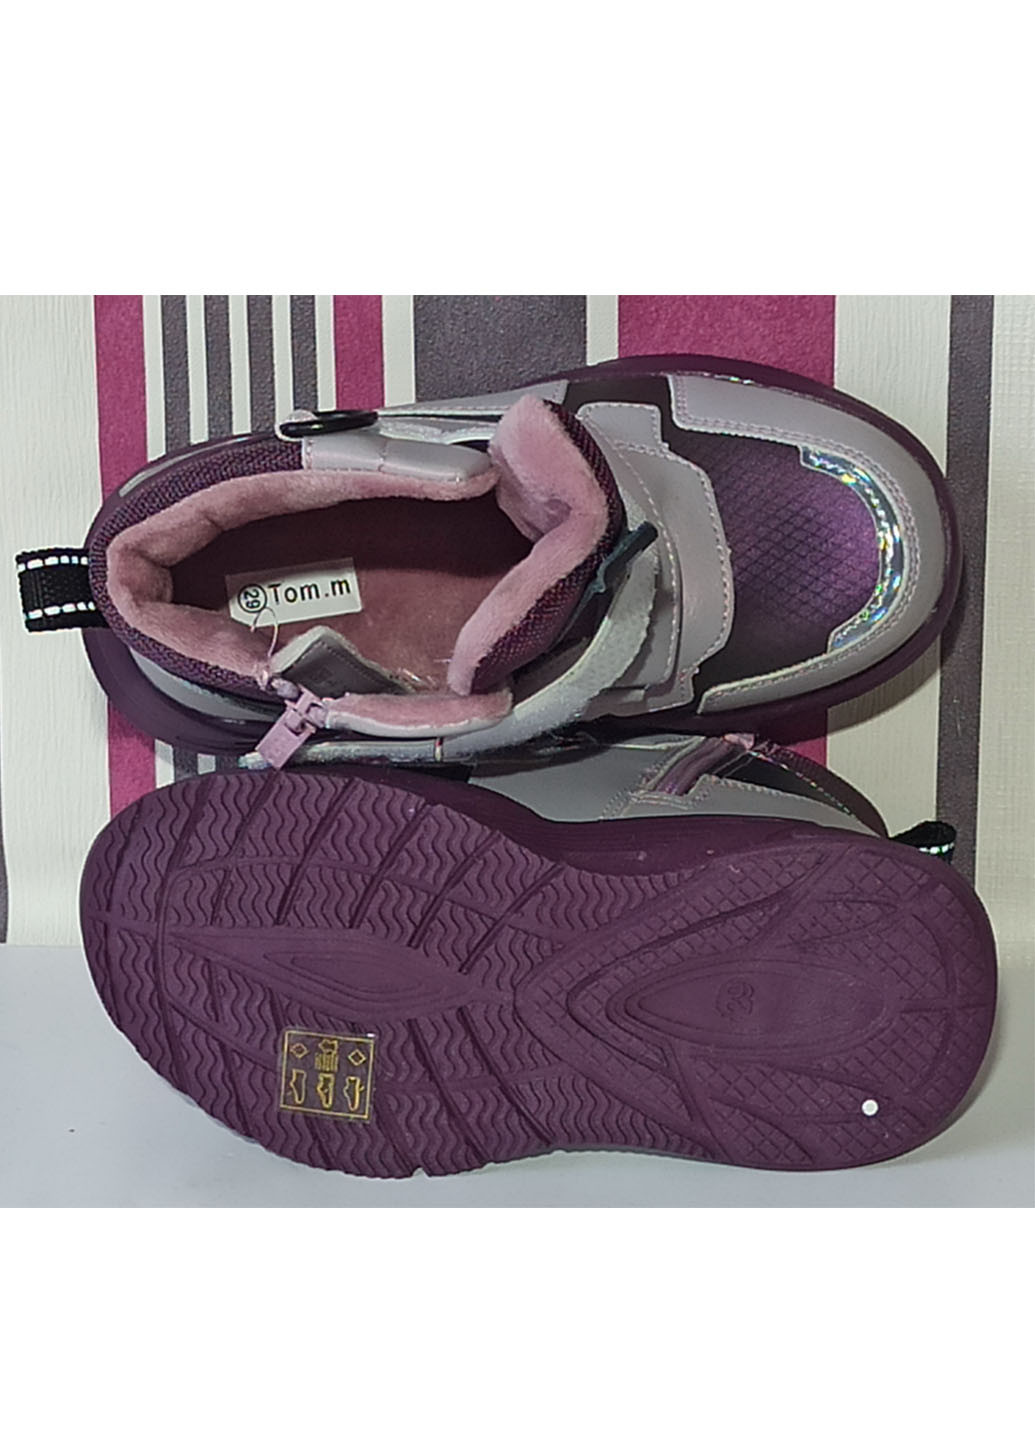 Фиолетовые повседневные осенние демисезонные ботинки для девочки утепленные на флисе 10269н фиолетовые том м Tom.M